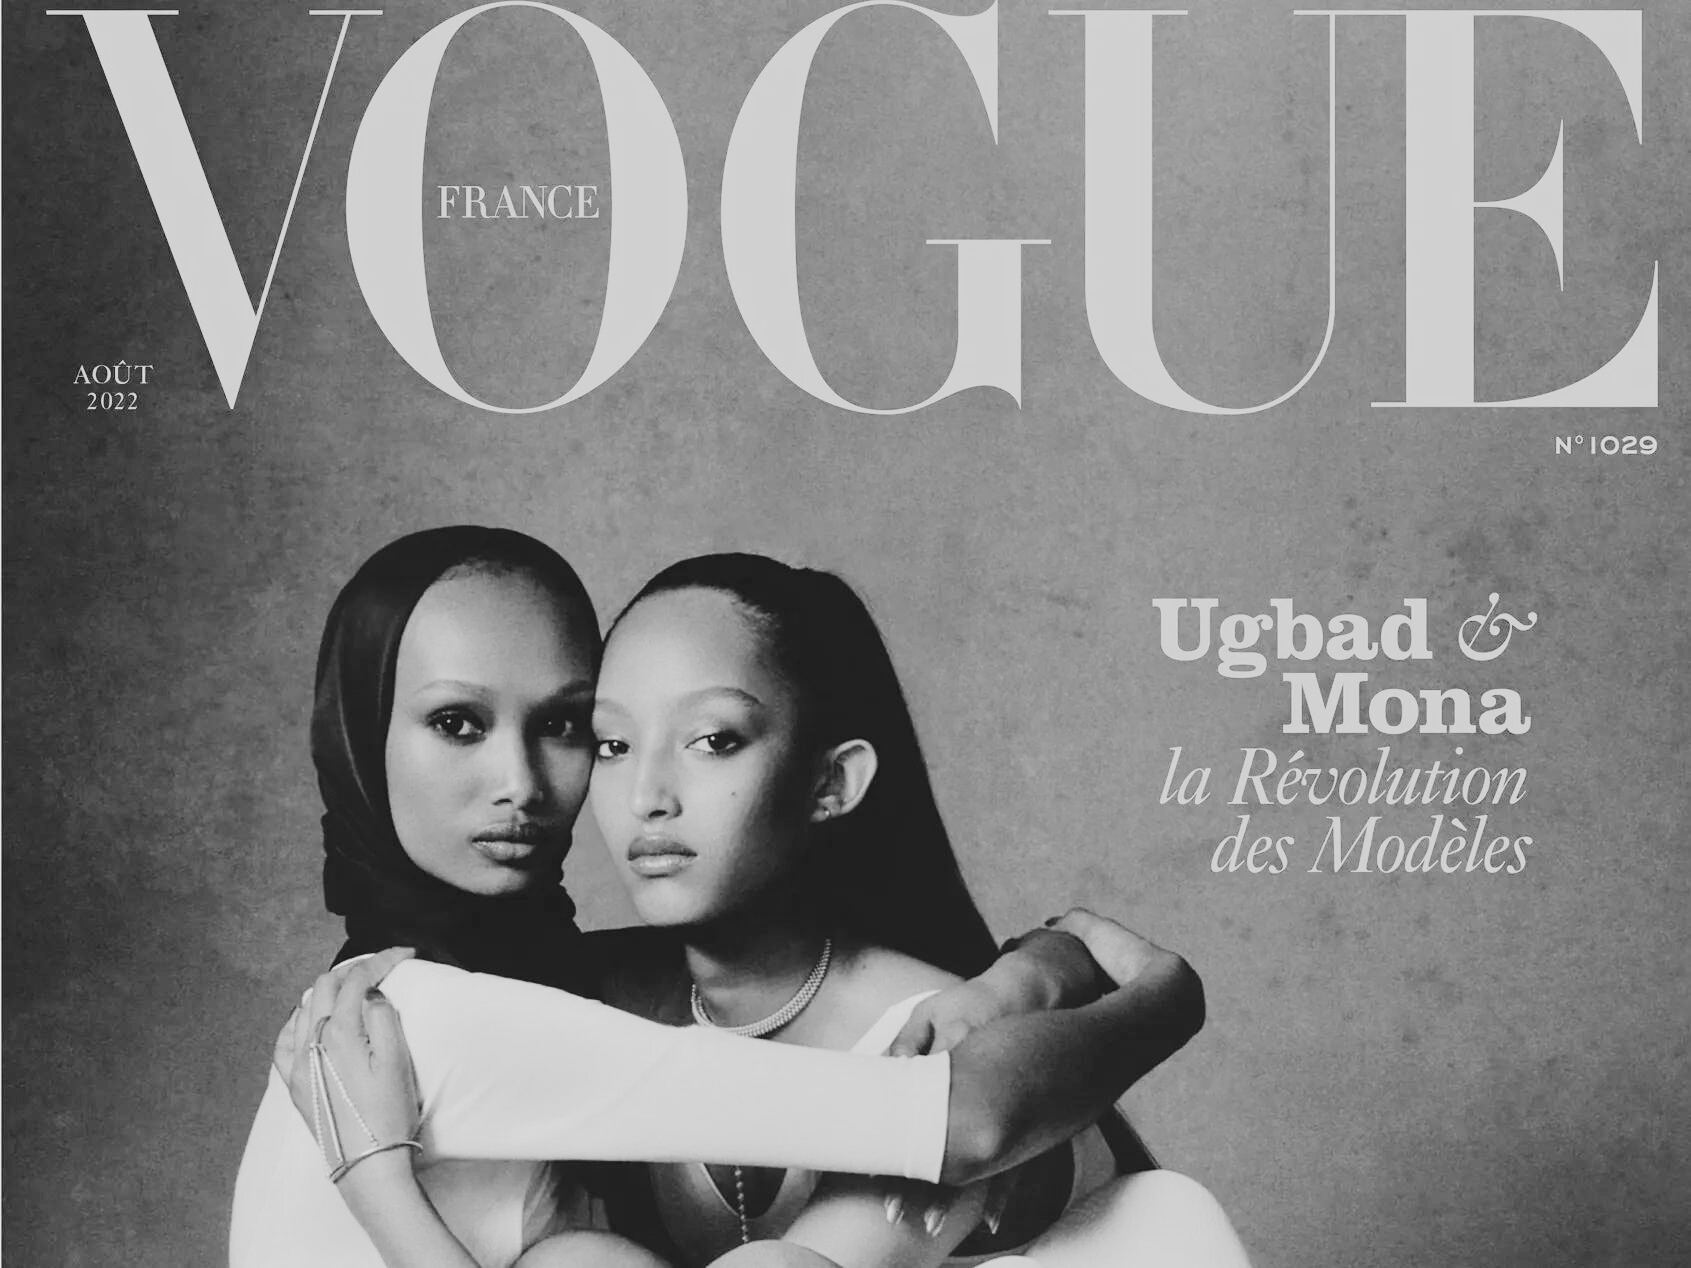 Couverture de Vogue France - édition août 2022 avec deux mannequins soudanaises en photo dont une hijab